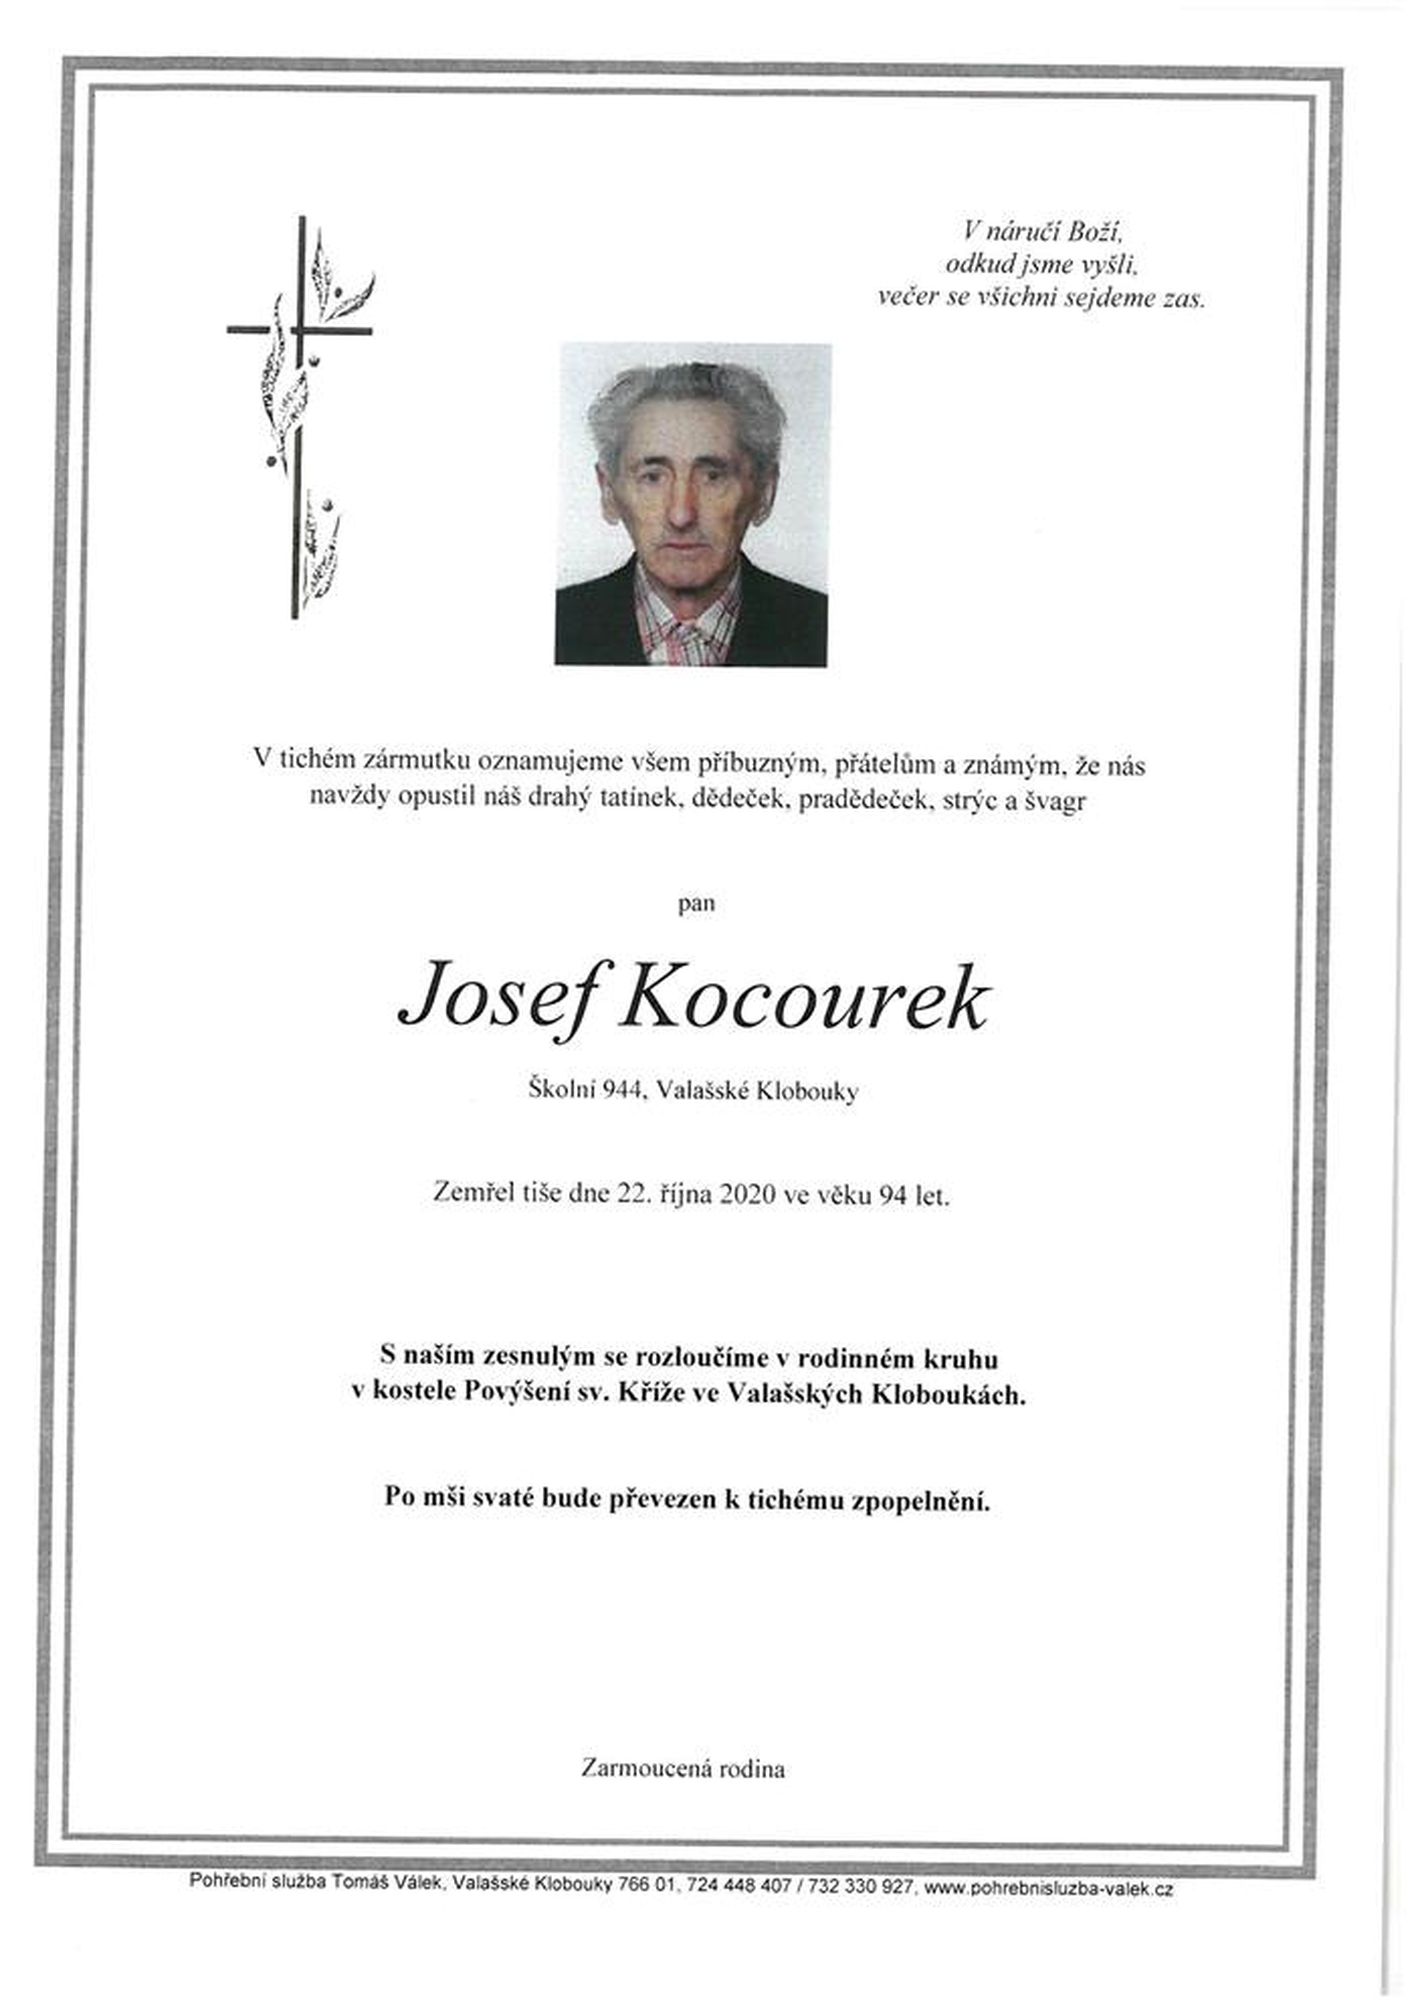 Josef Kocourek